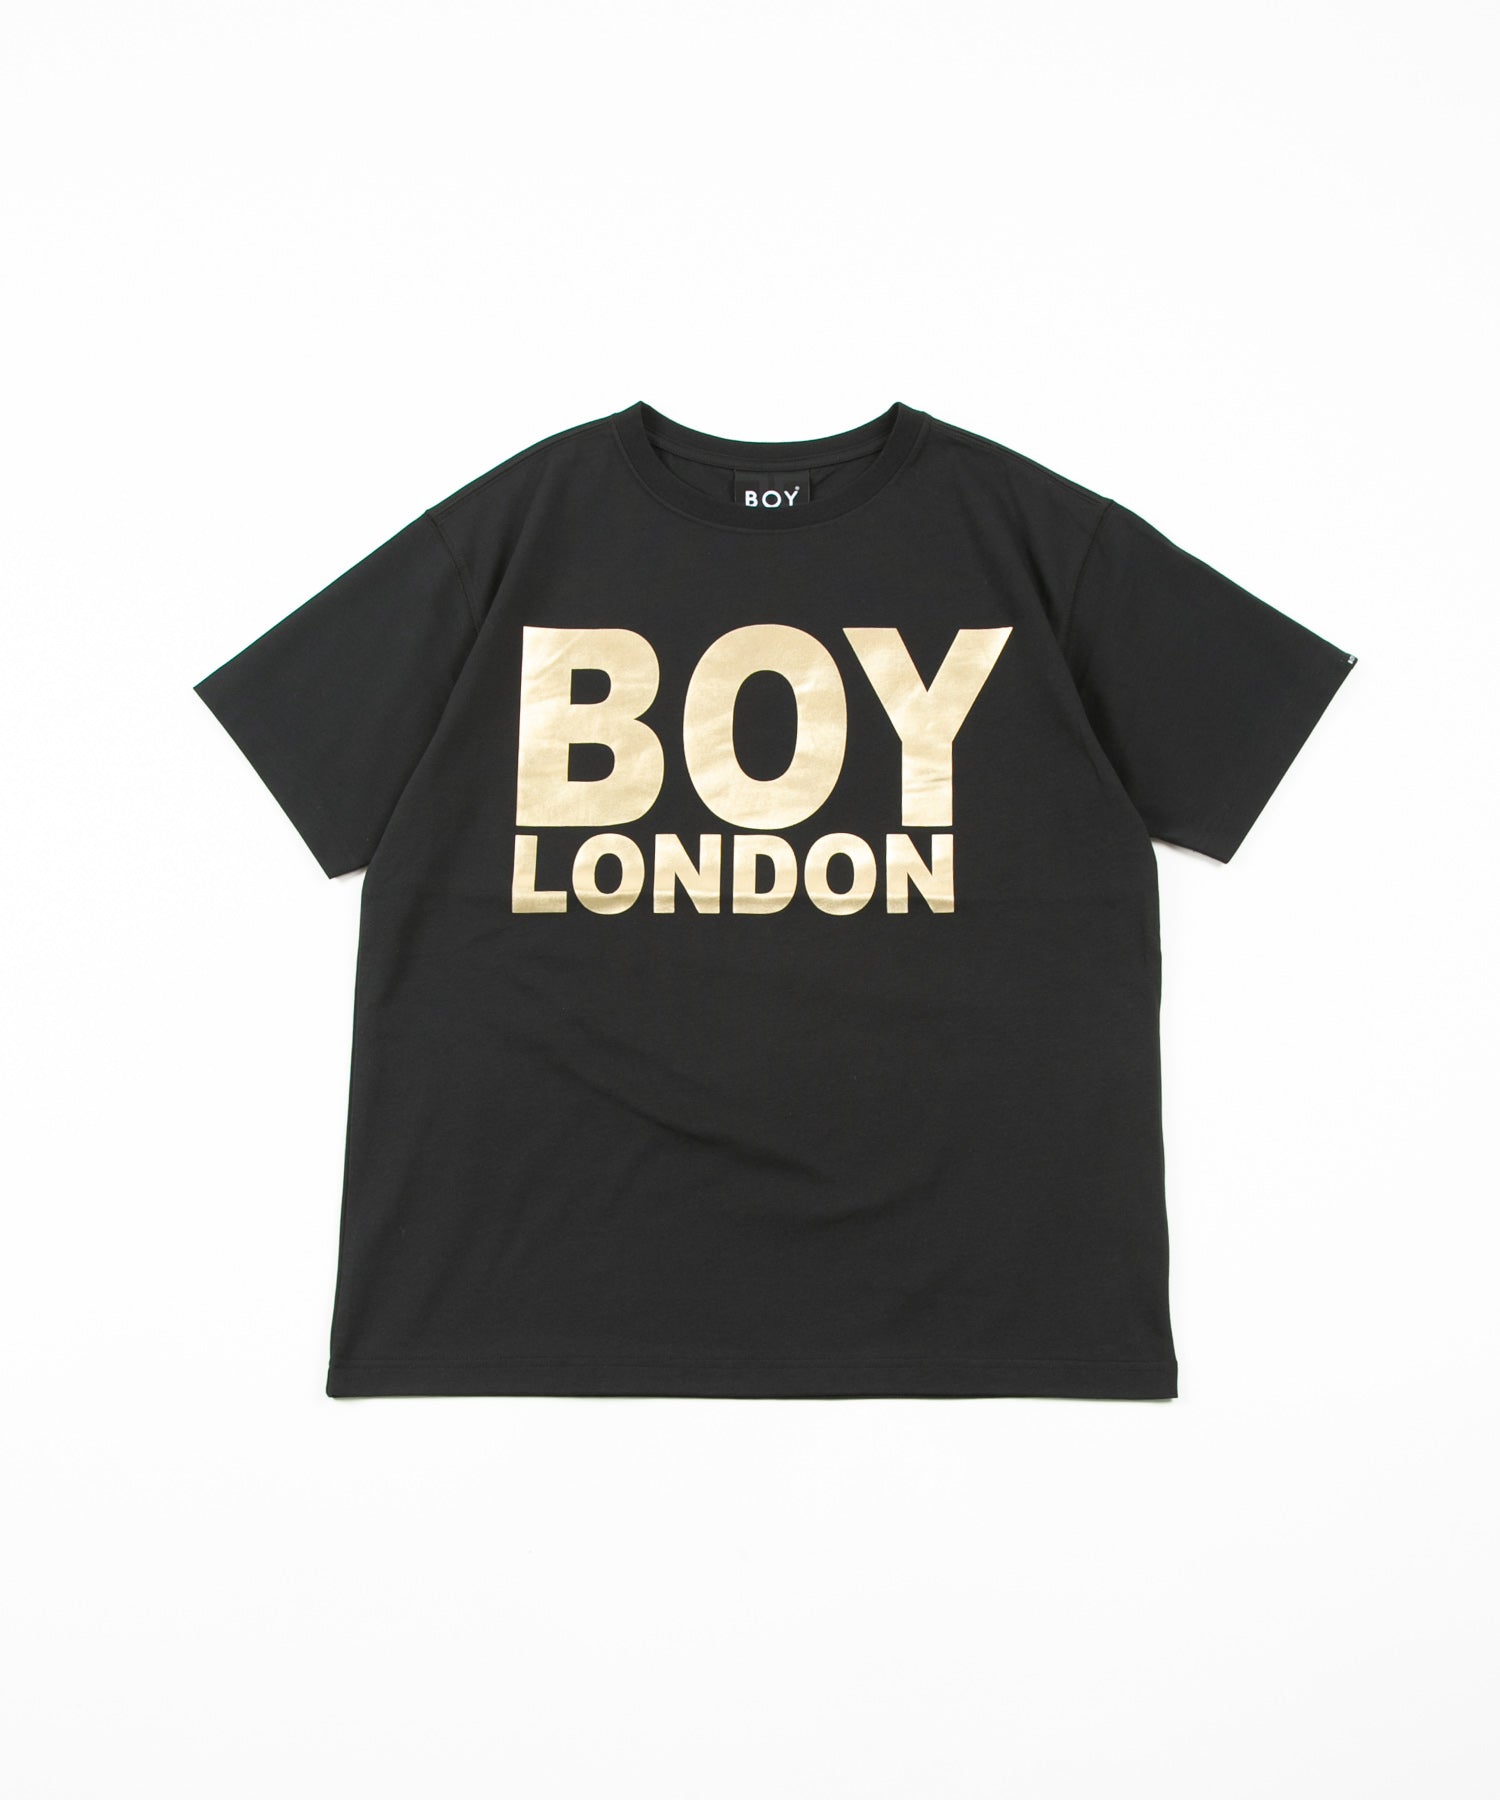 BOY London tシャツ